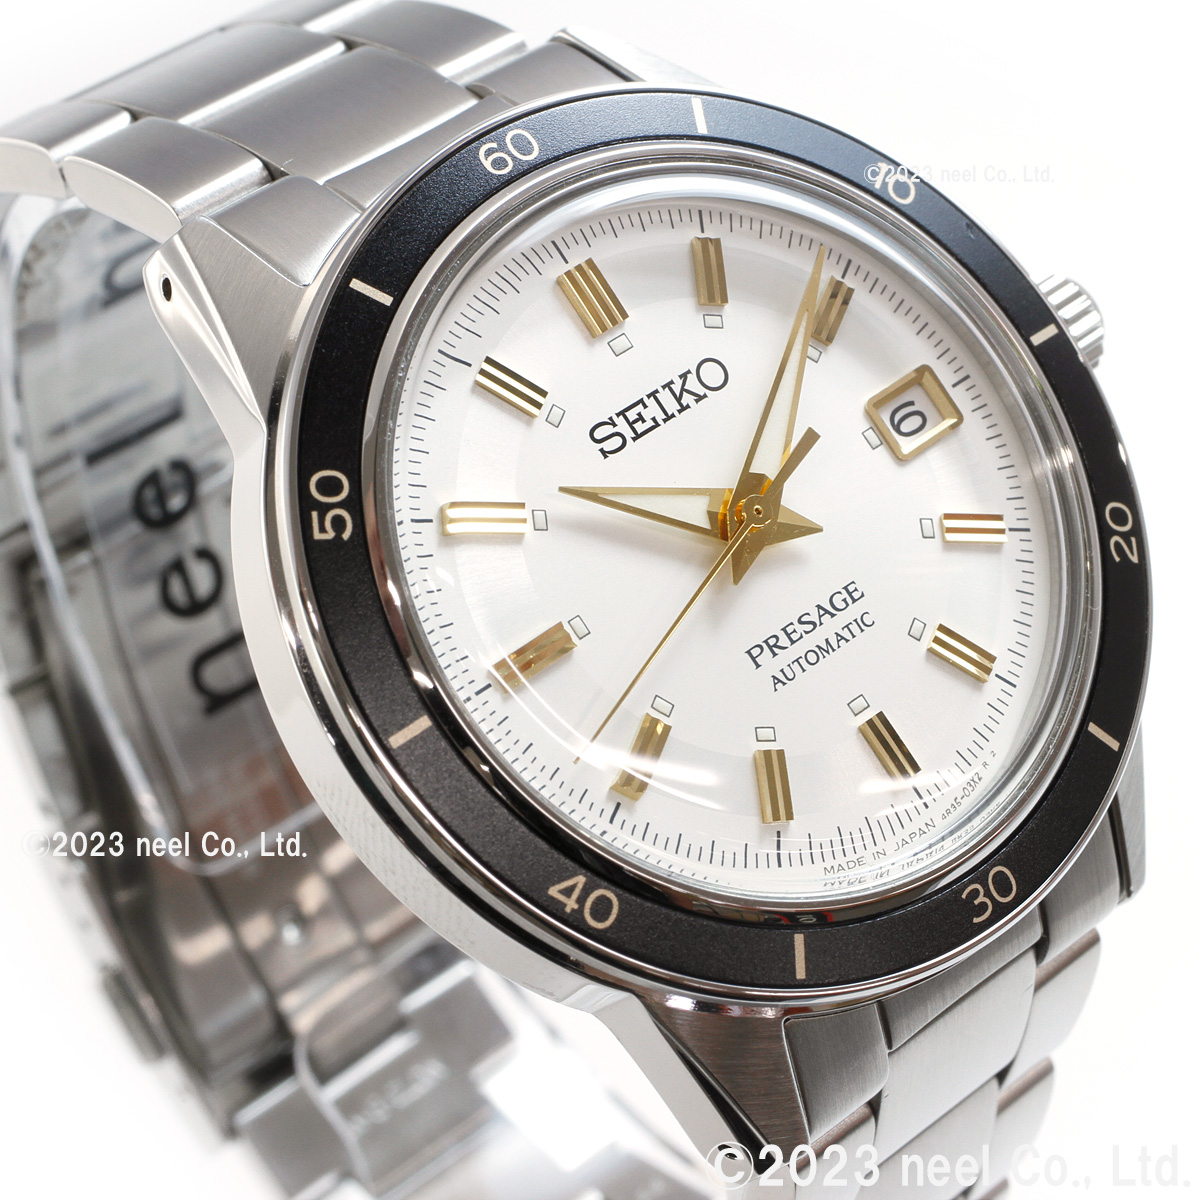 セイコー プレザージュ 自動巻き メカニカル 腕時計 メンズ SARY193 